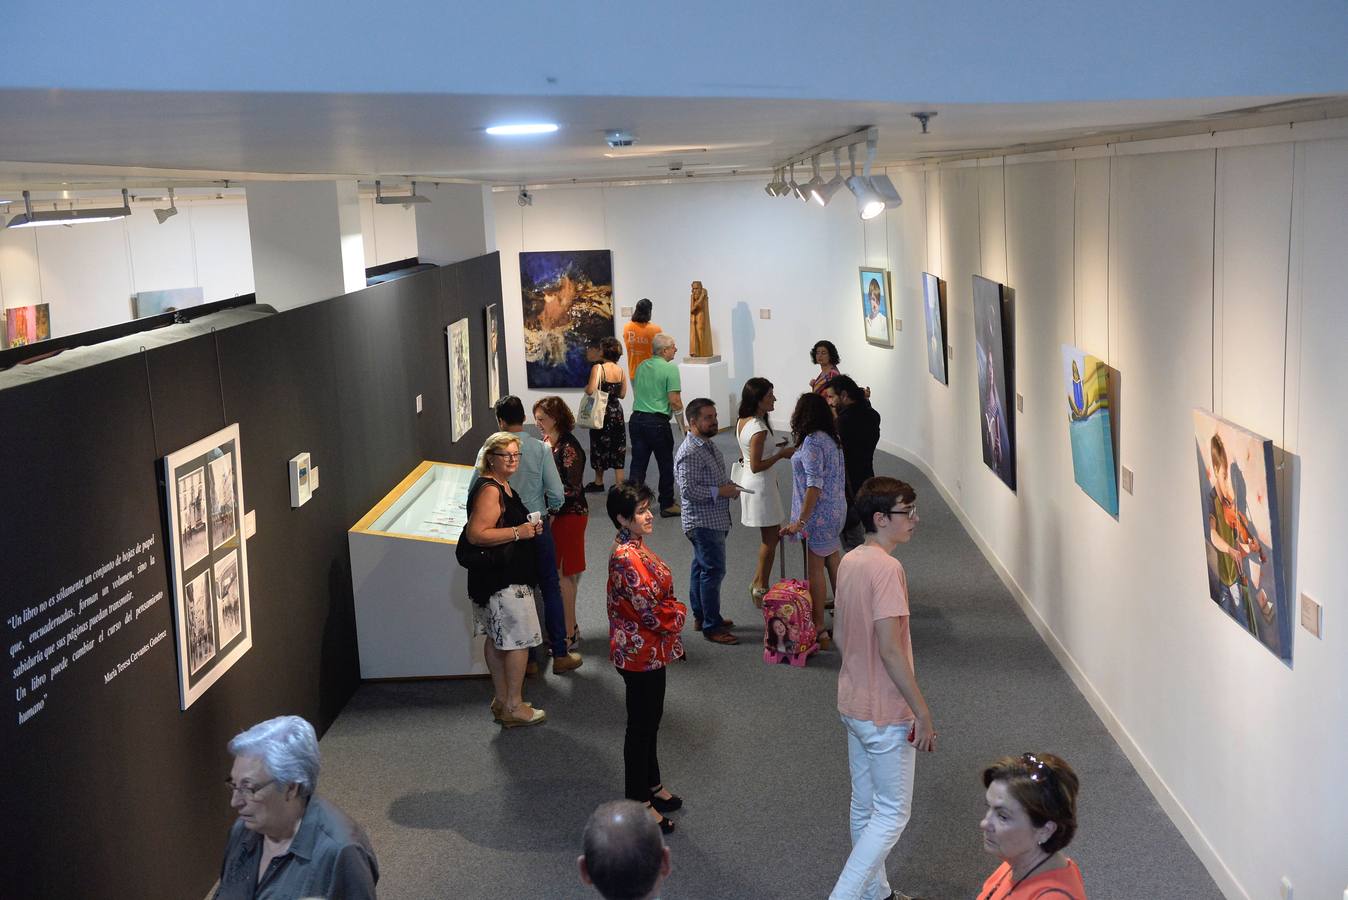 La Biblioteca Regional acoge una exposición de pintura, escultura y fotografía enmarcada en la Feria del Libro de Murcia